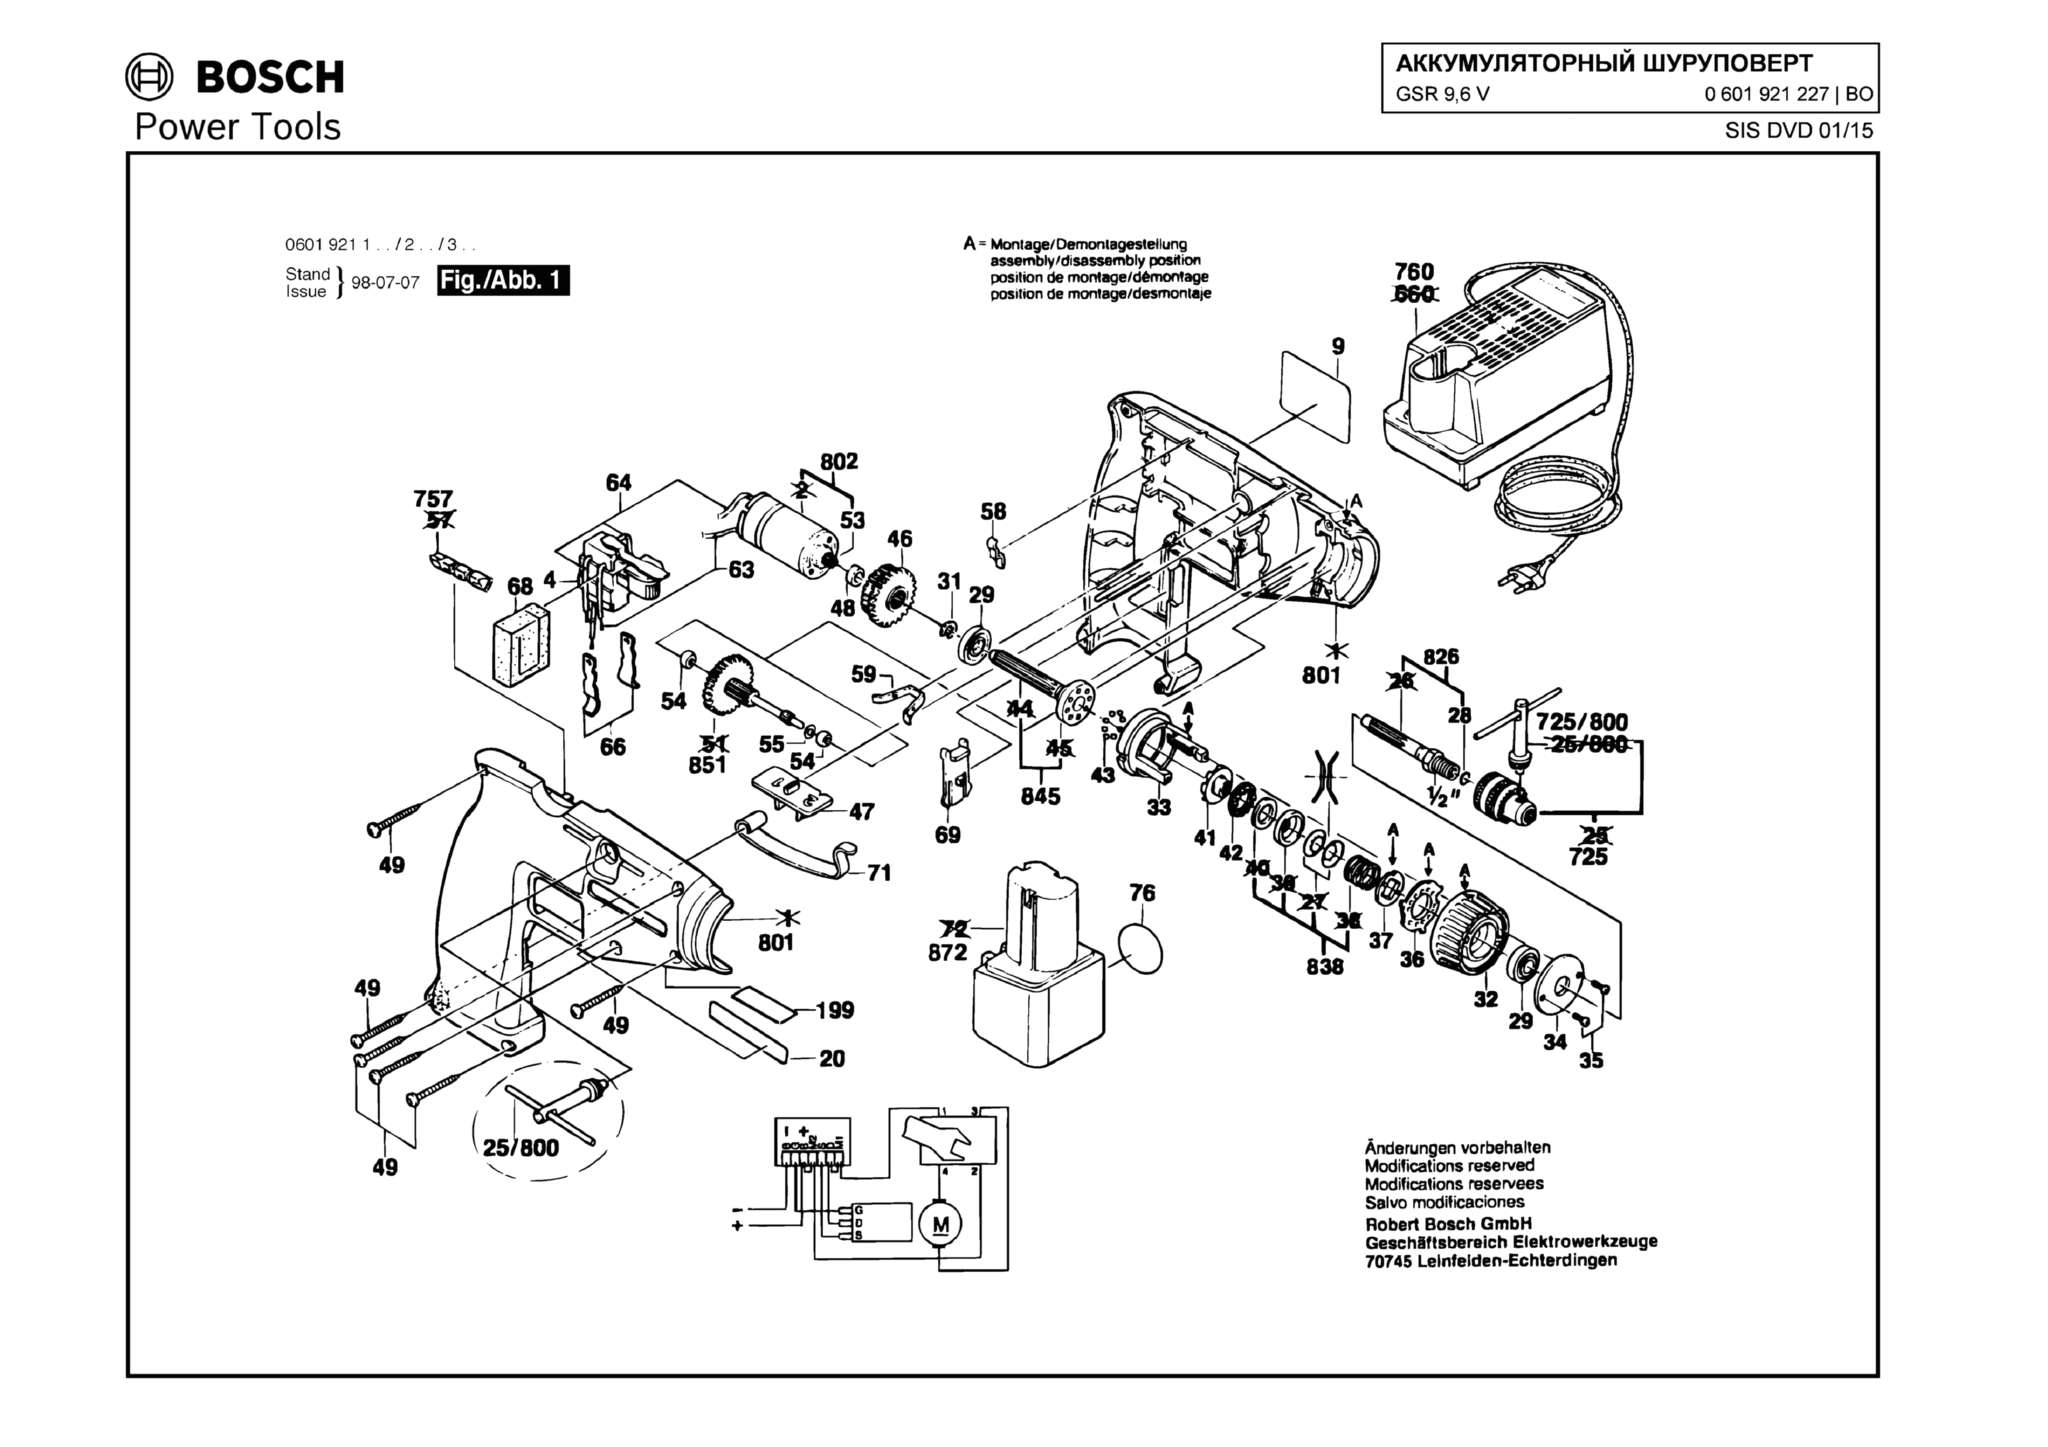 Запчасти, схема и деталировка Bosch GSR 9,6 V (ТИП 0601921227)